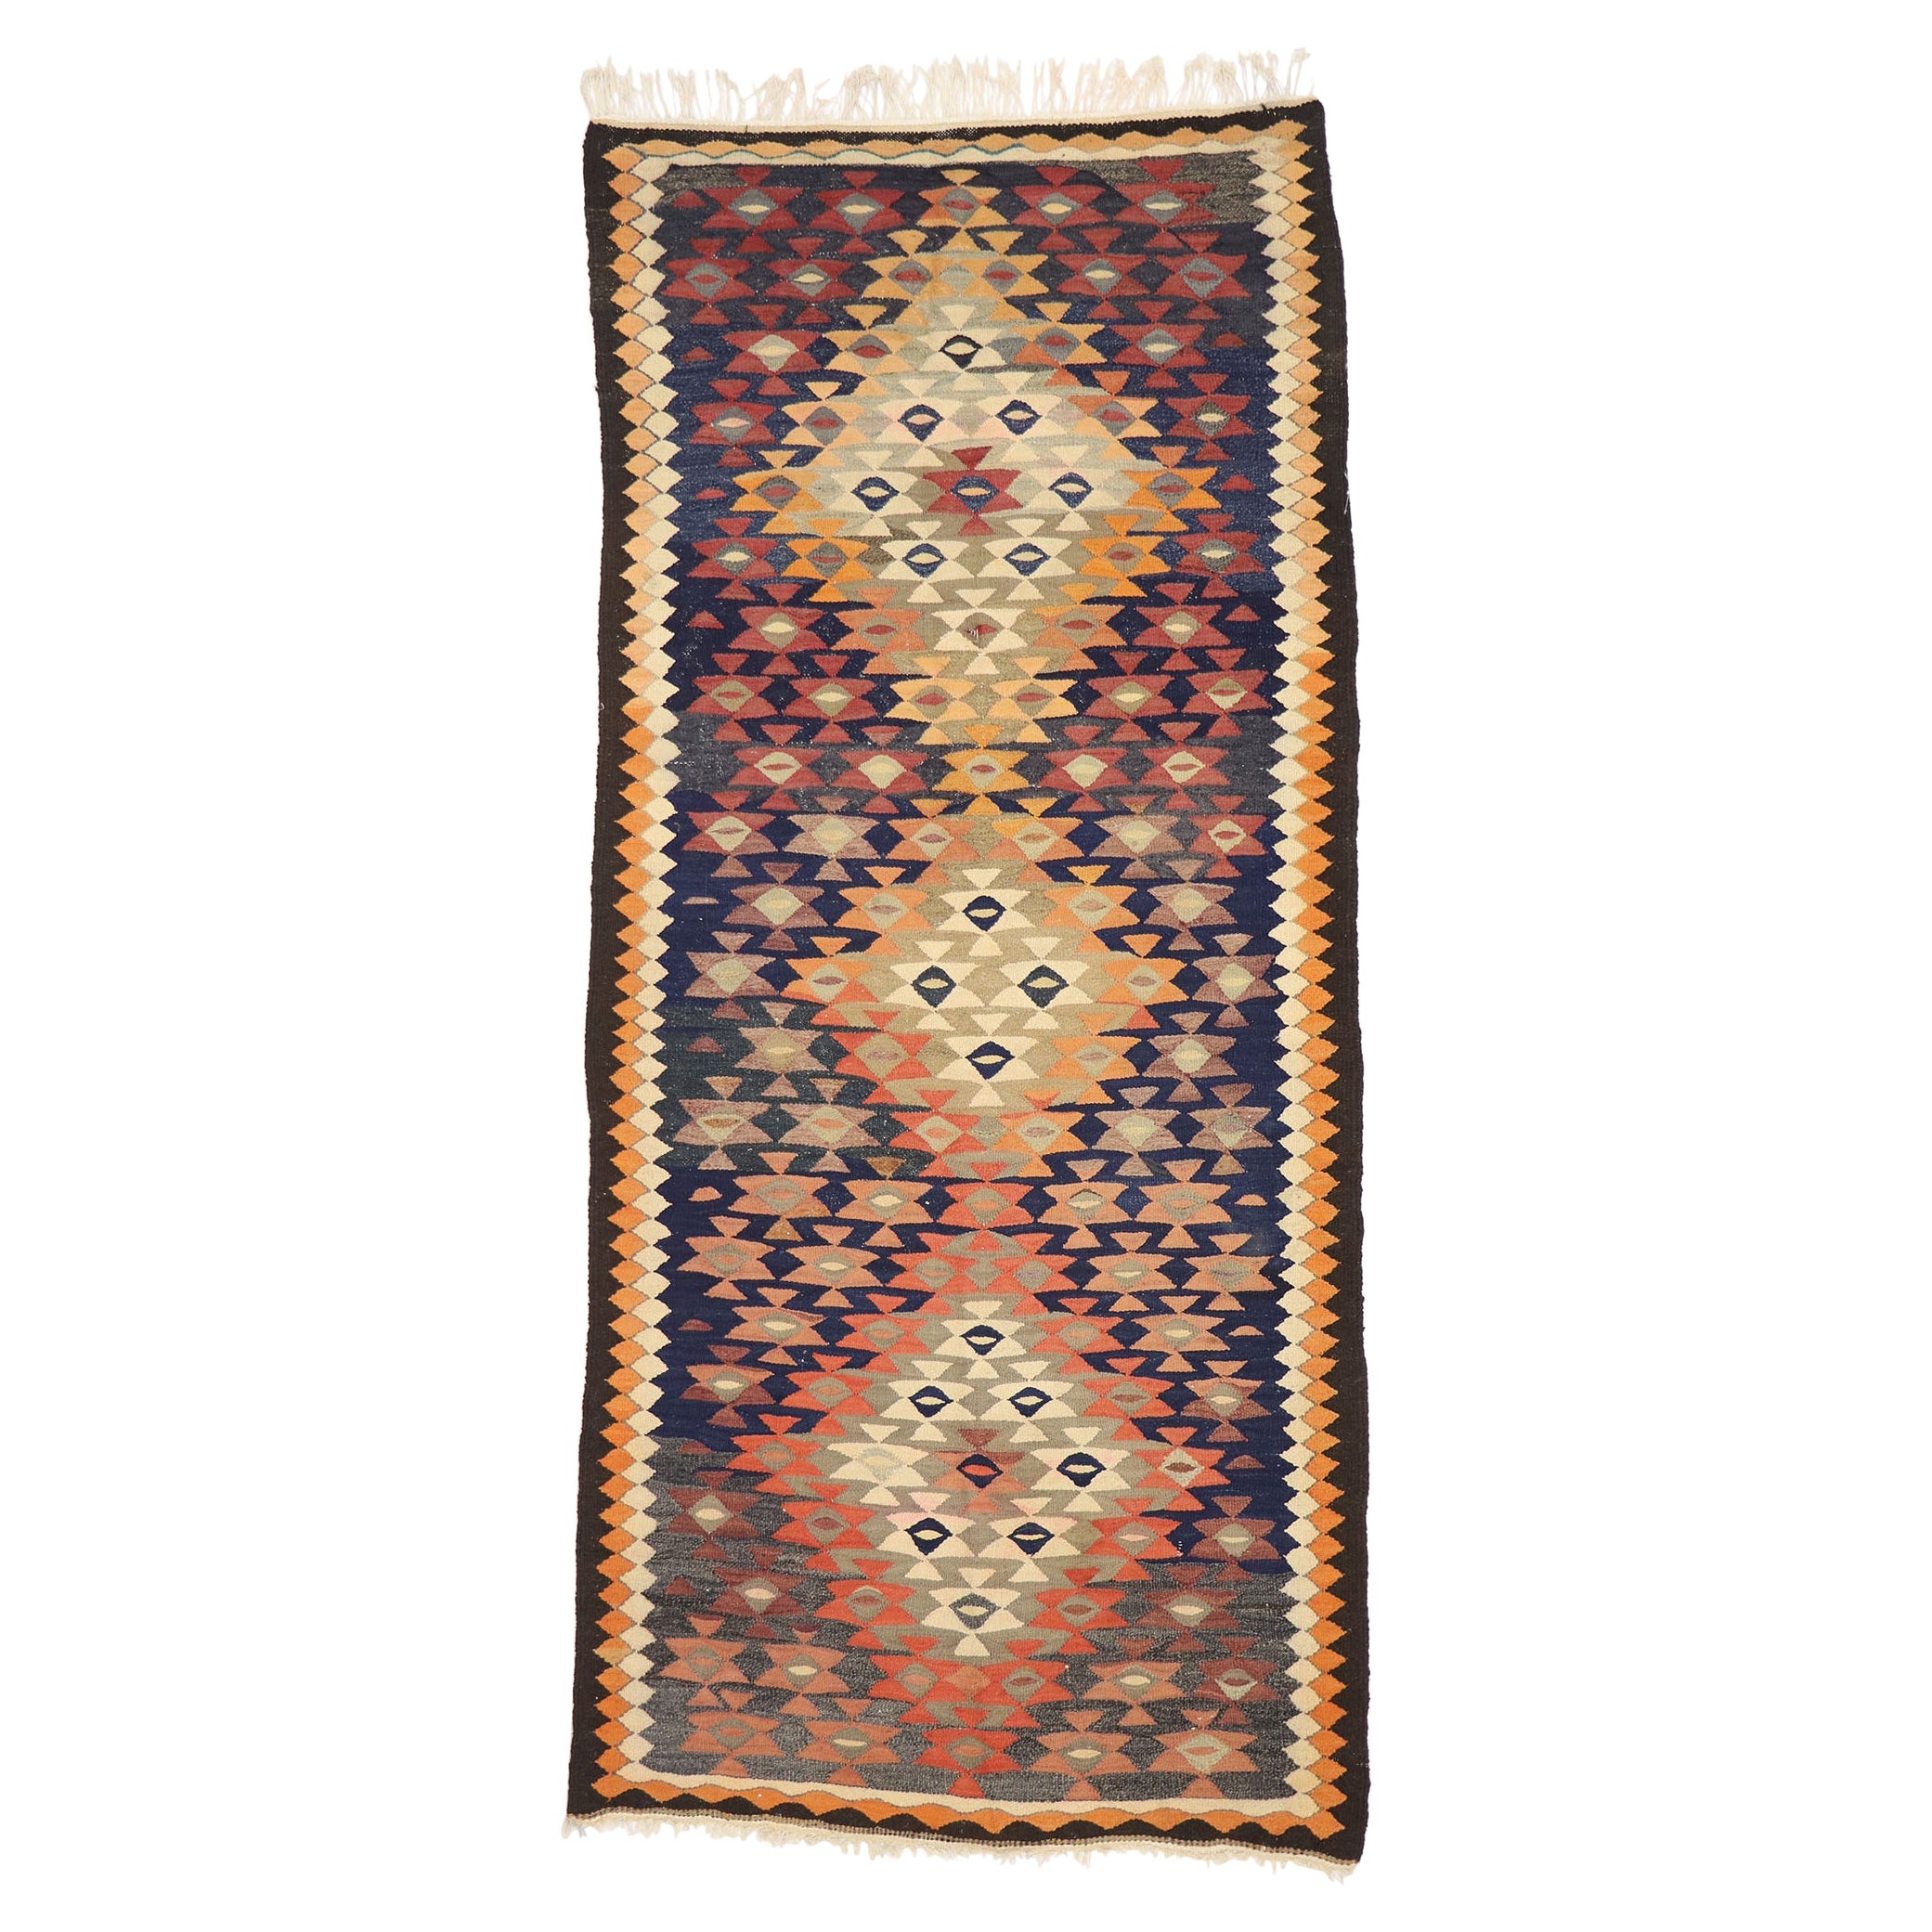 Persischer Bijar-Kelim-Teppich im Vintage-Stil, Stammeskunst-Enchantment Meets Southwest Desert Chic